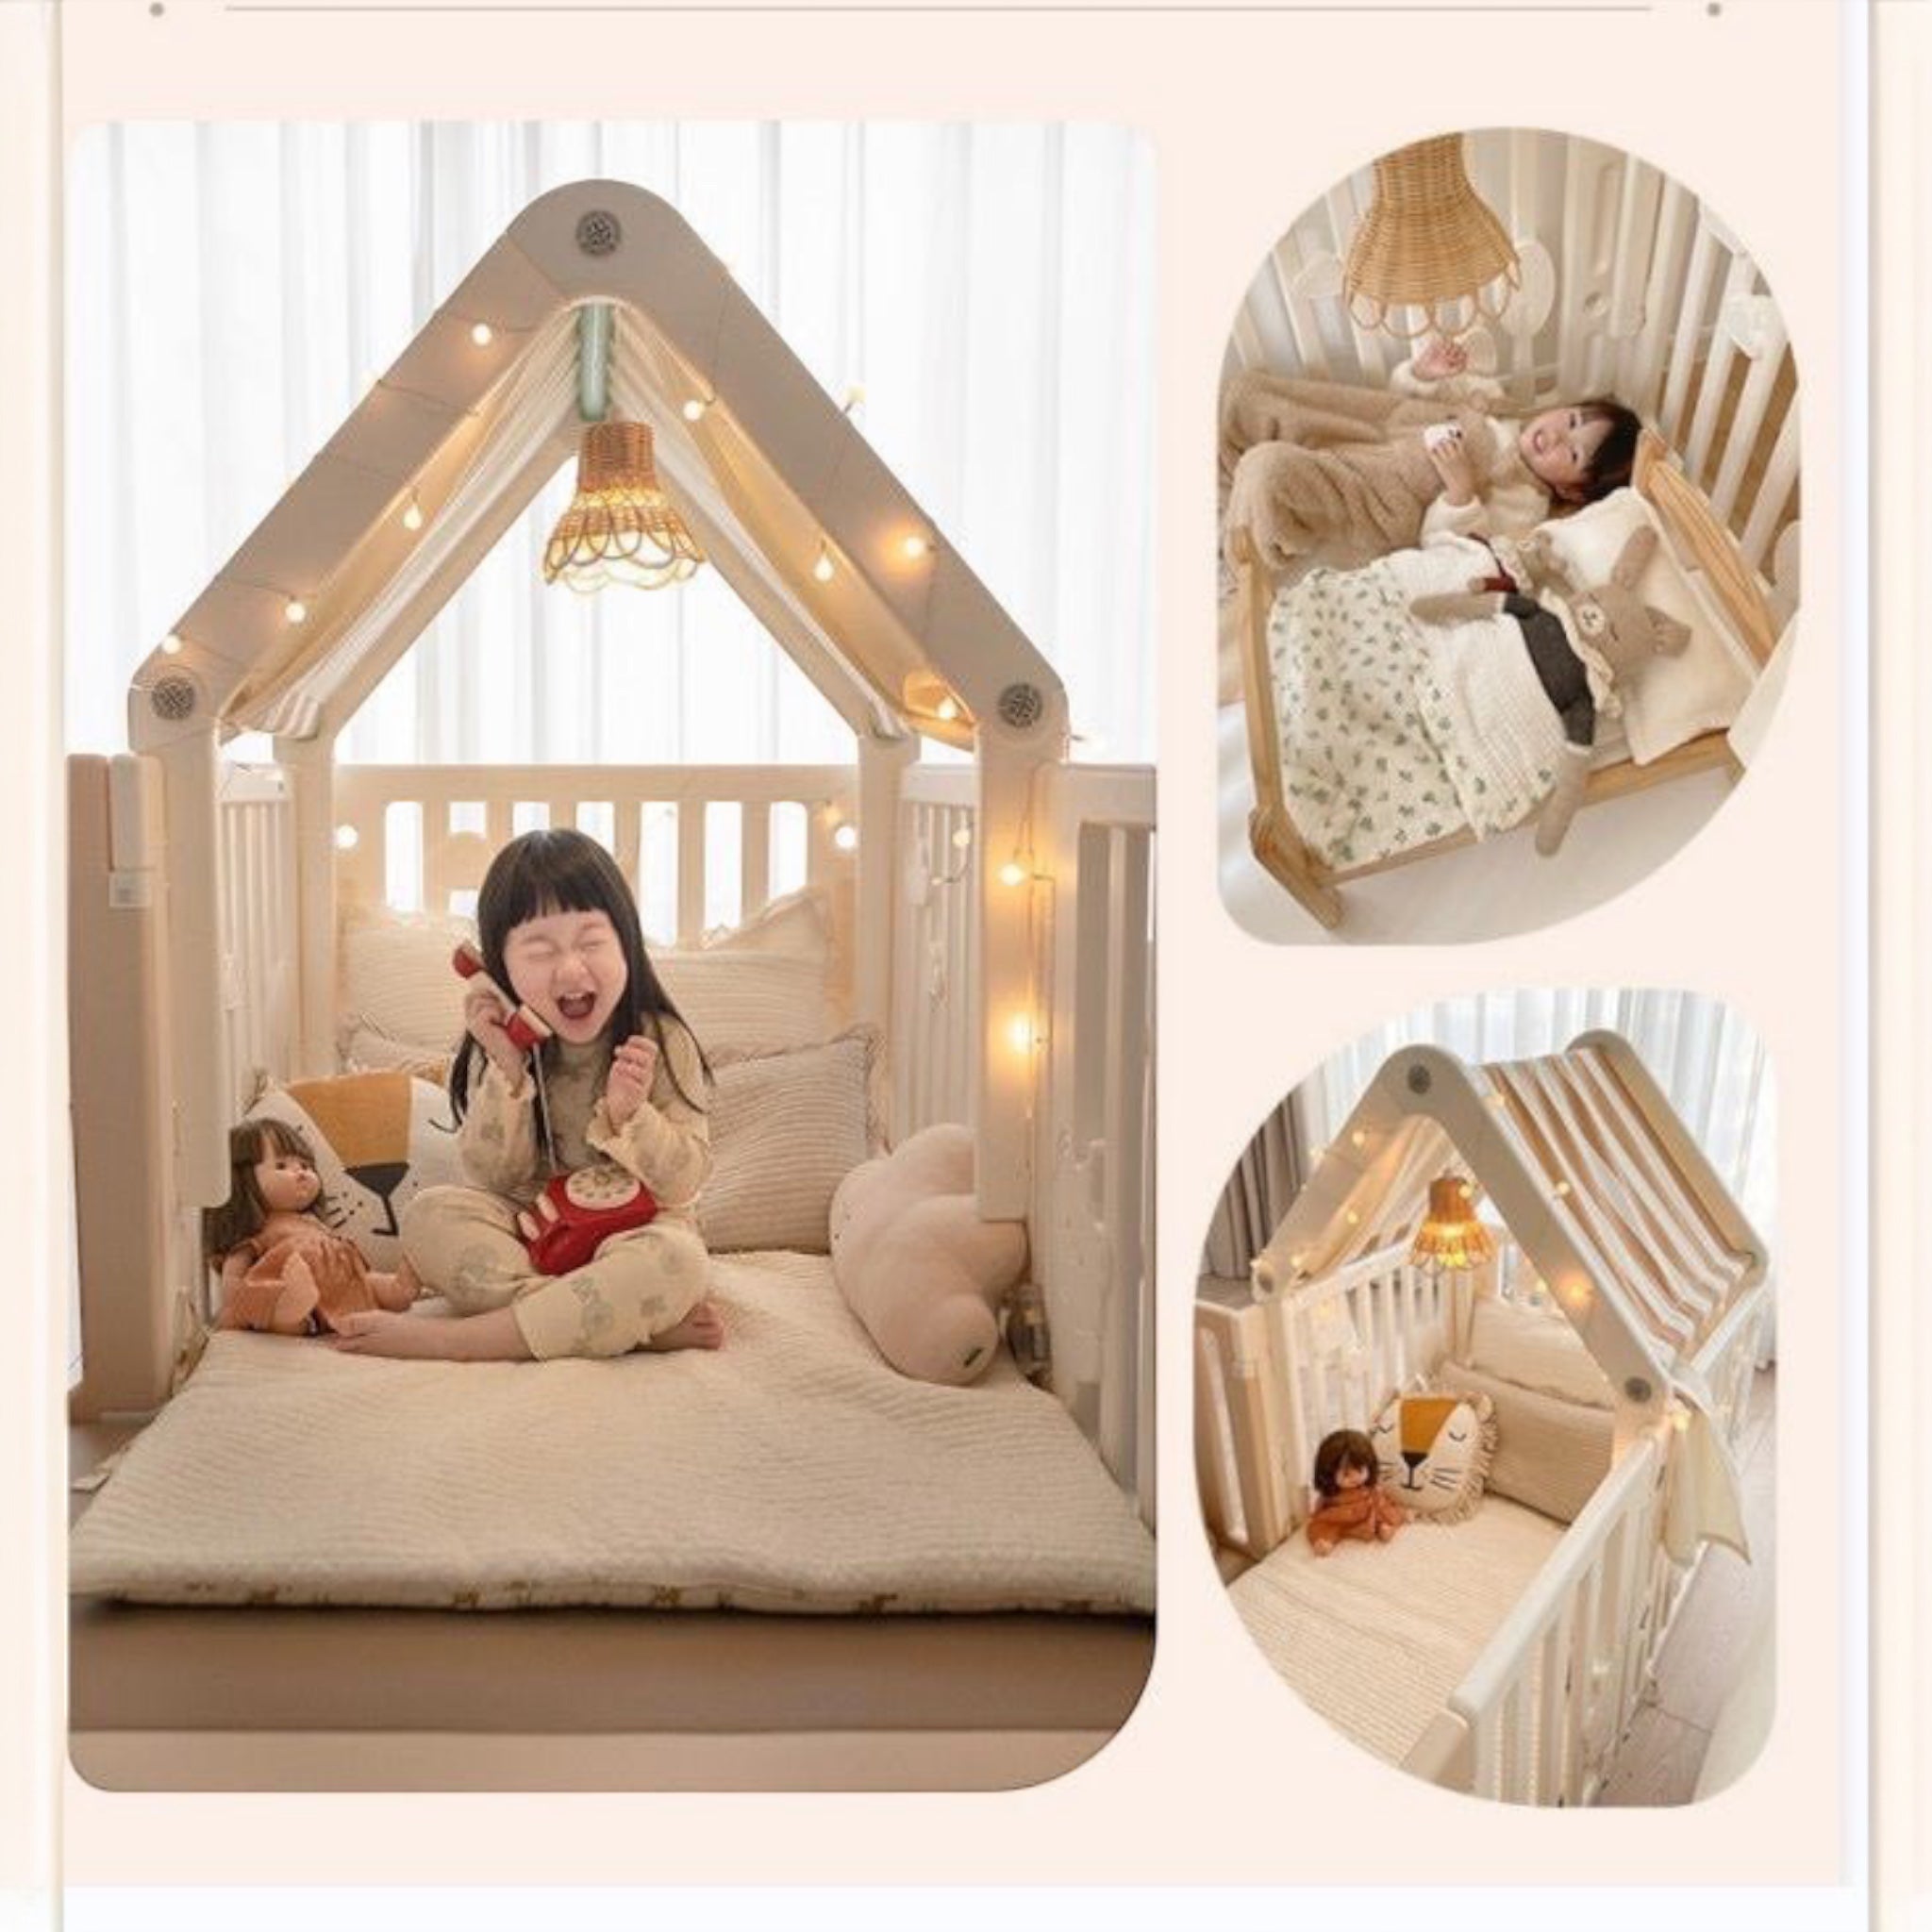 Teddy Bear 🧸 Moon 🌙 Cubs Playpen Cozy House For Little Bunny